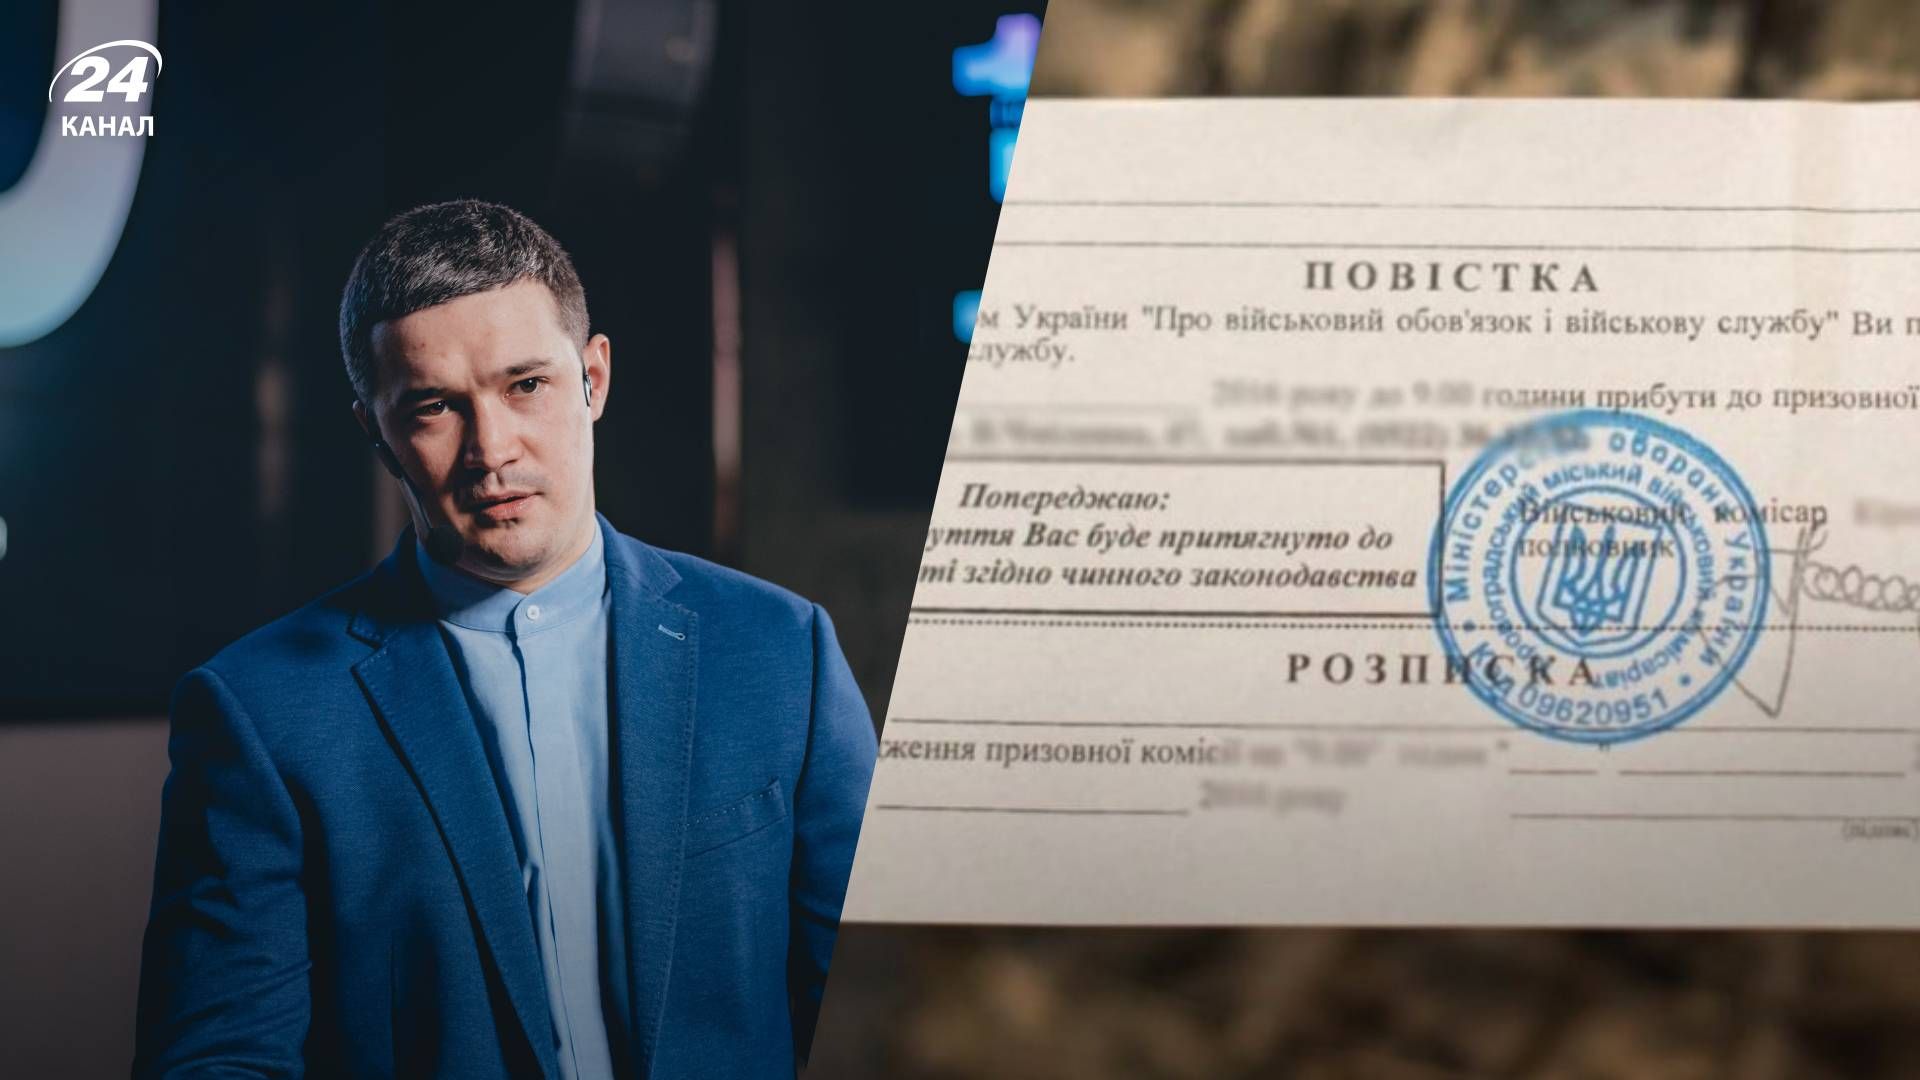 Федоров пояснив інформацію про вручення повісток та вибори в Дії - 24 Канал